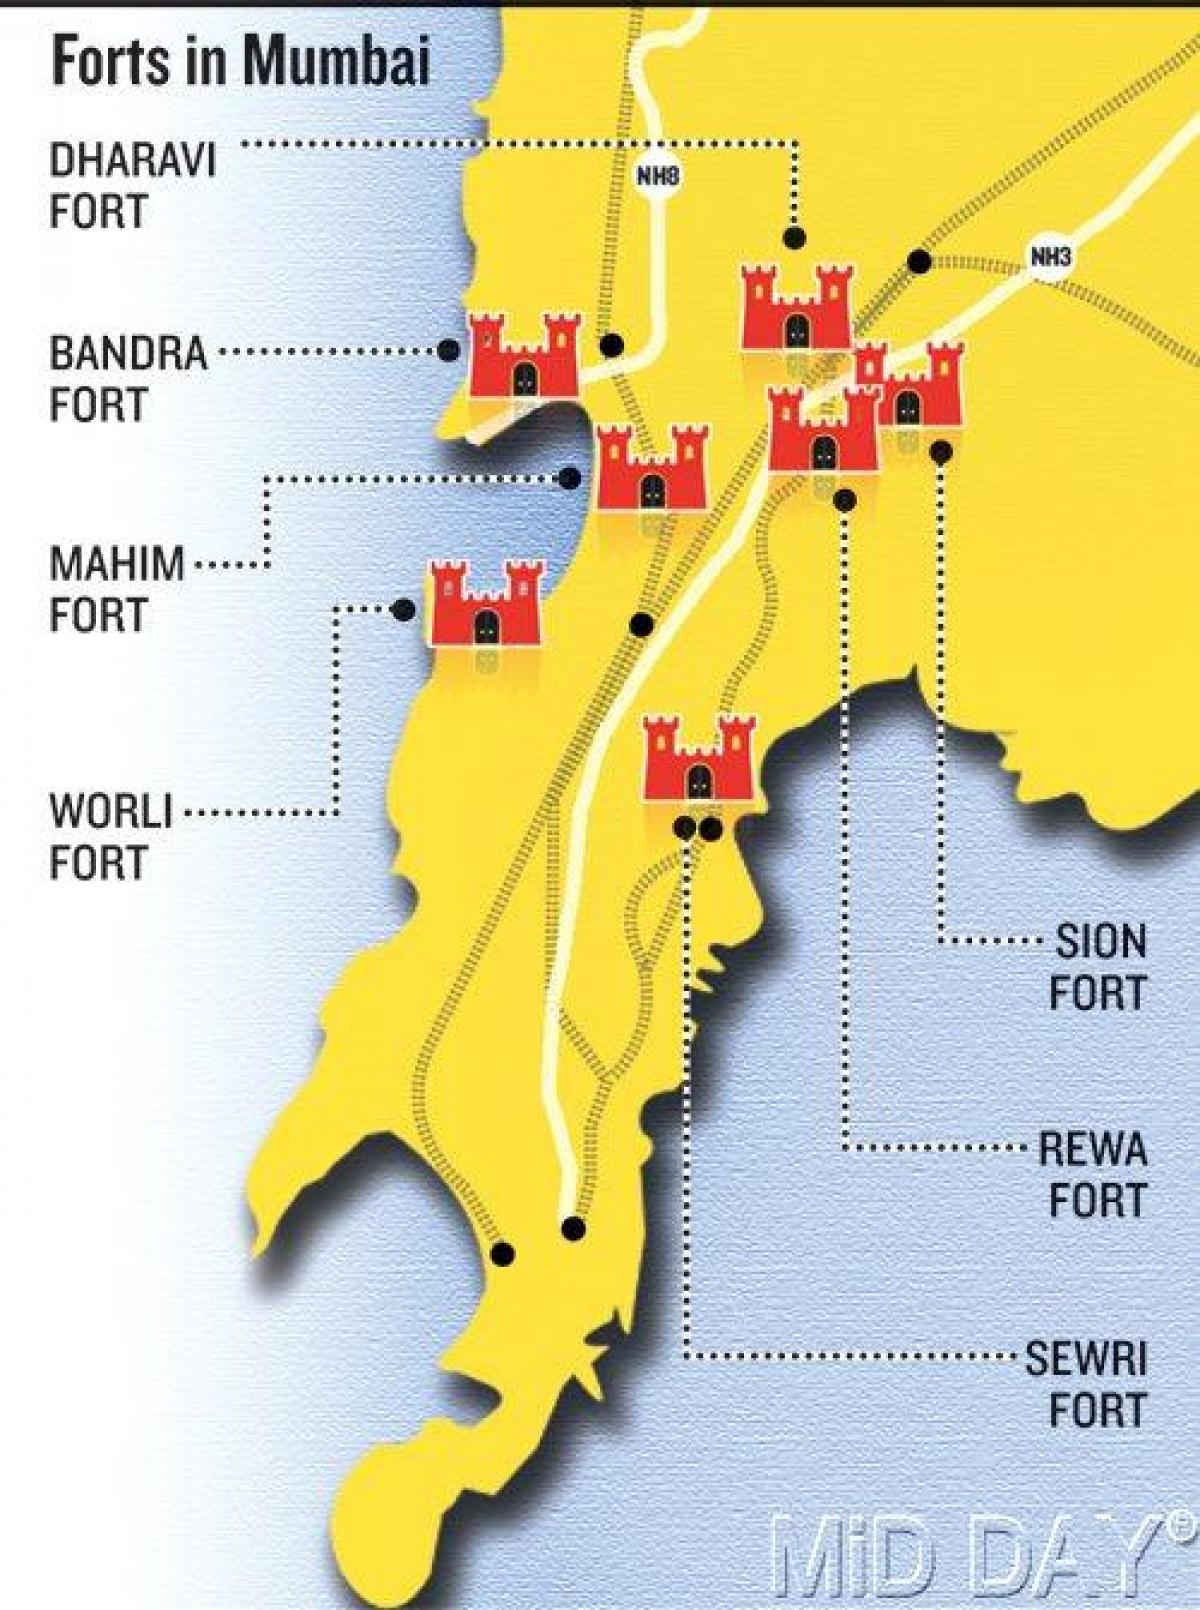 Mumbai fort alueen kartta